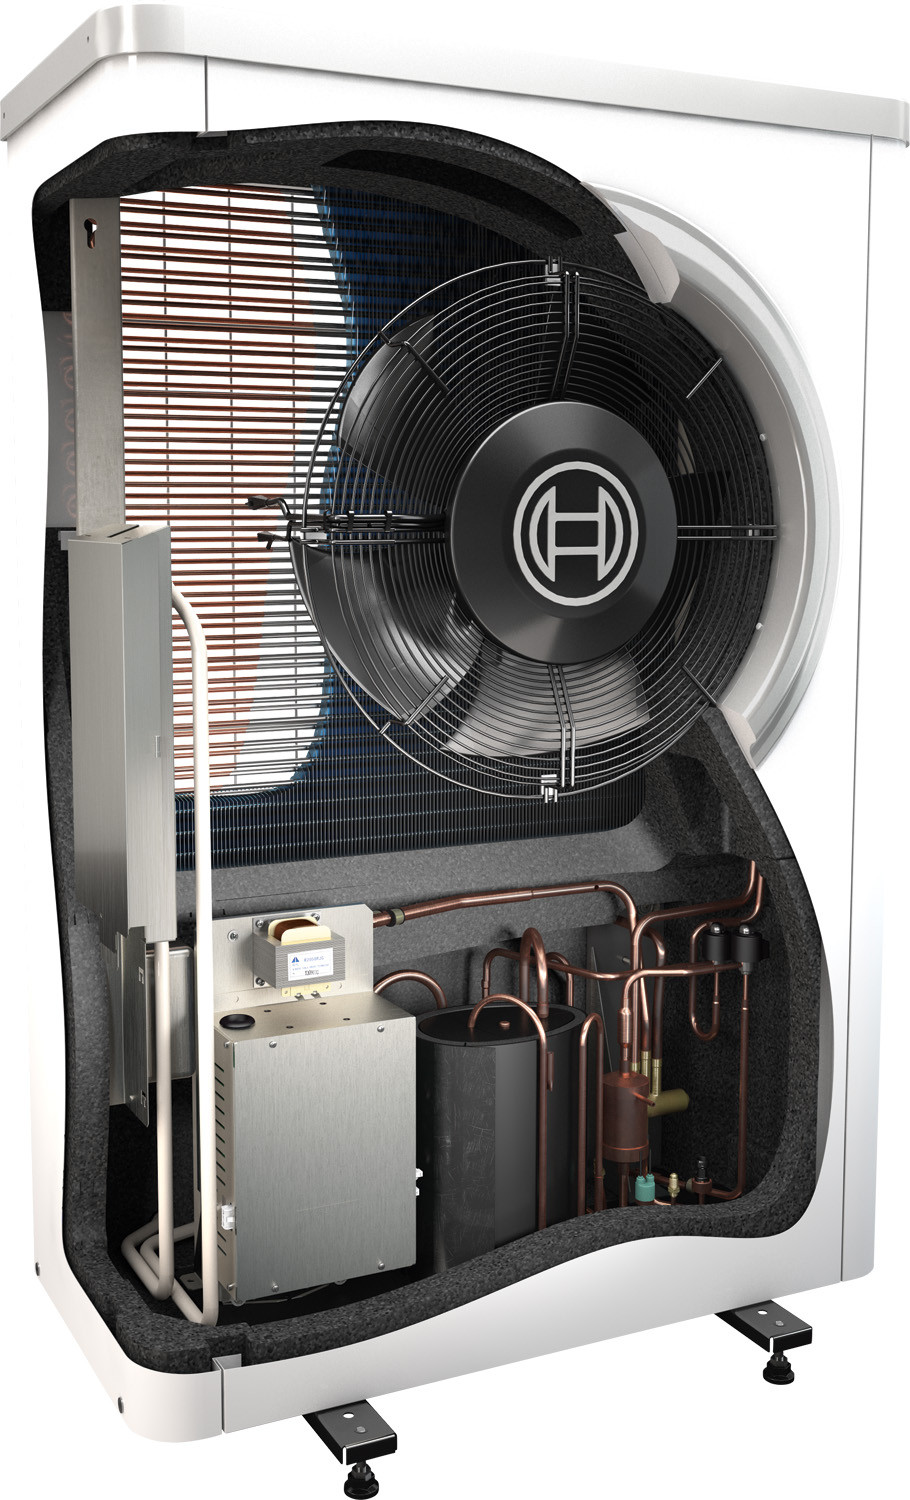 Toplotna črpalka Bosch Compress 6000 AWB z vgrajenim mešalnim ventilom